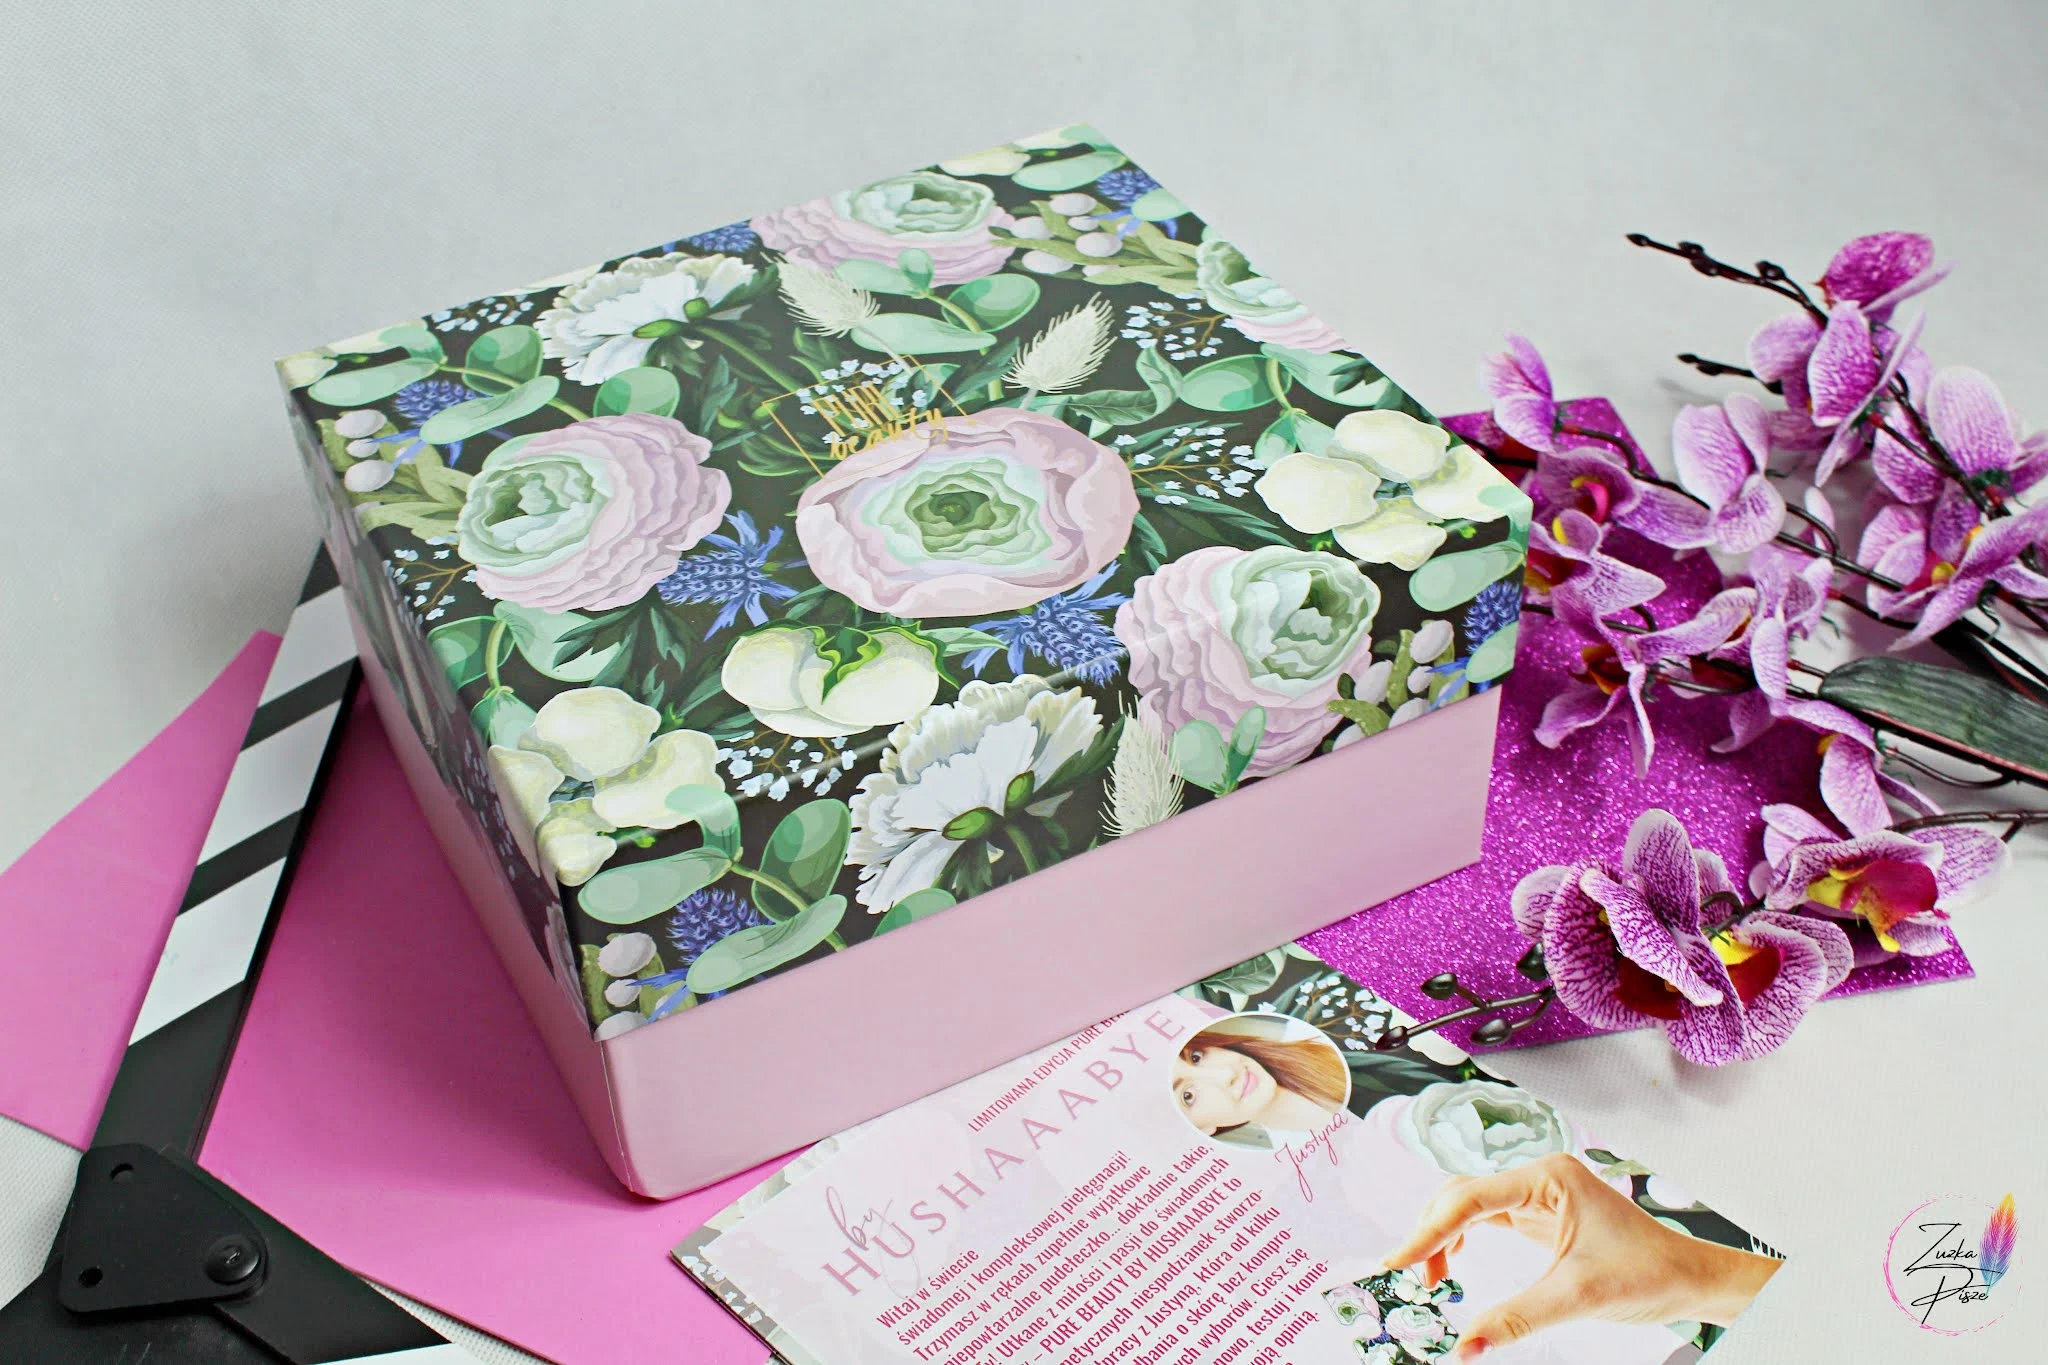 Liimtowana edycja Pure Beauty Box by HUSHAAABYE - openbox pudełka